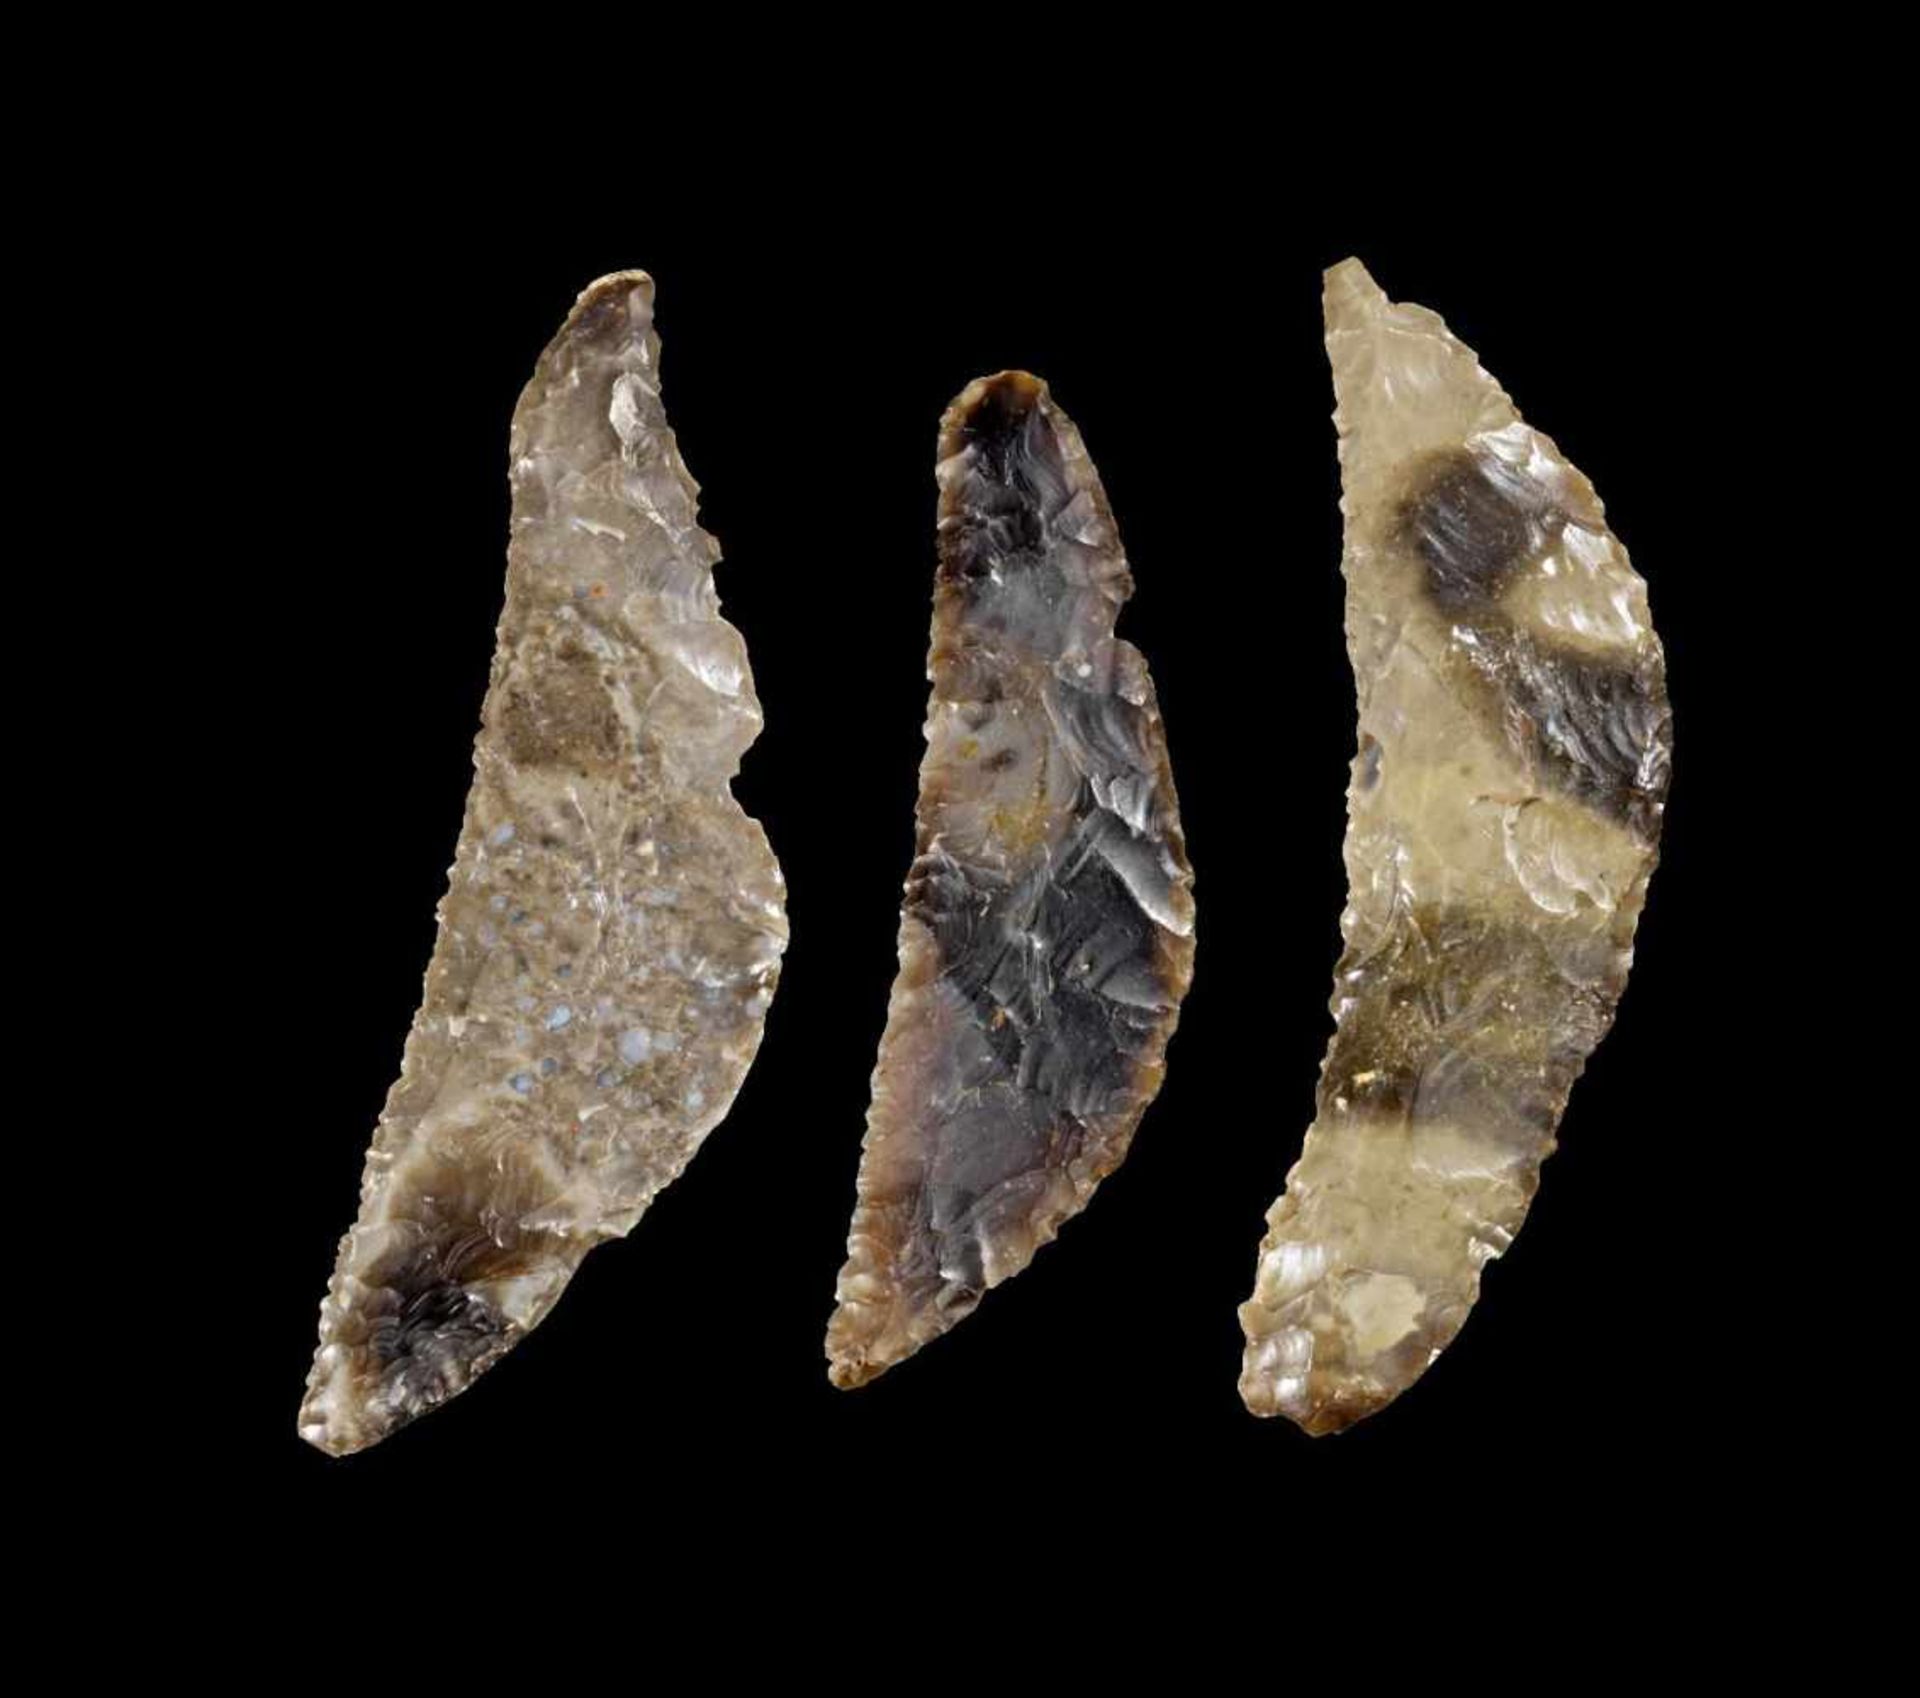 Sammlung Sicheln. Nordeuropa, neolithisch, 6. - 3. Jt. v. Chr. L 13,5-16cm. Hell- und dunkelgrauer